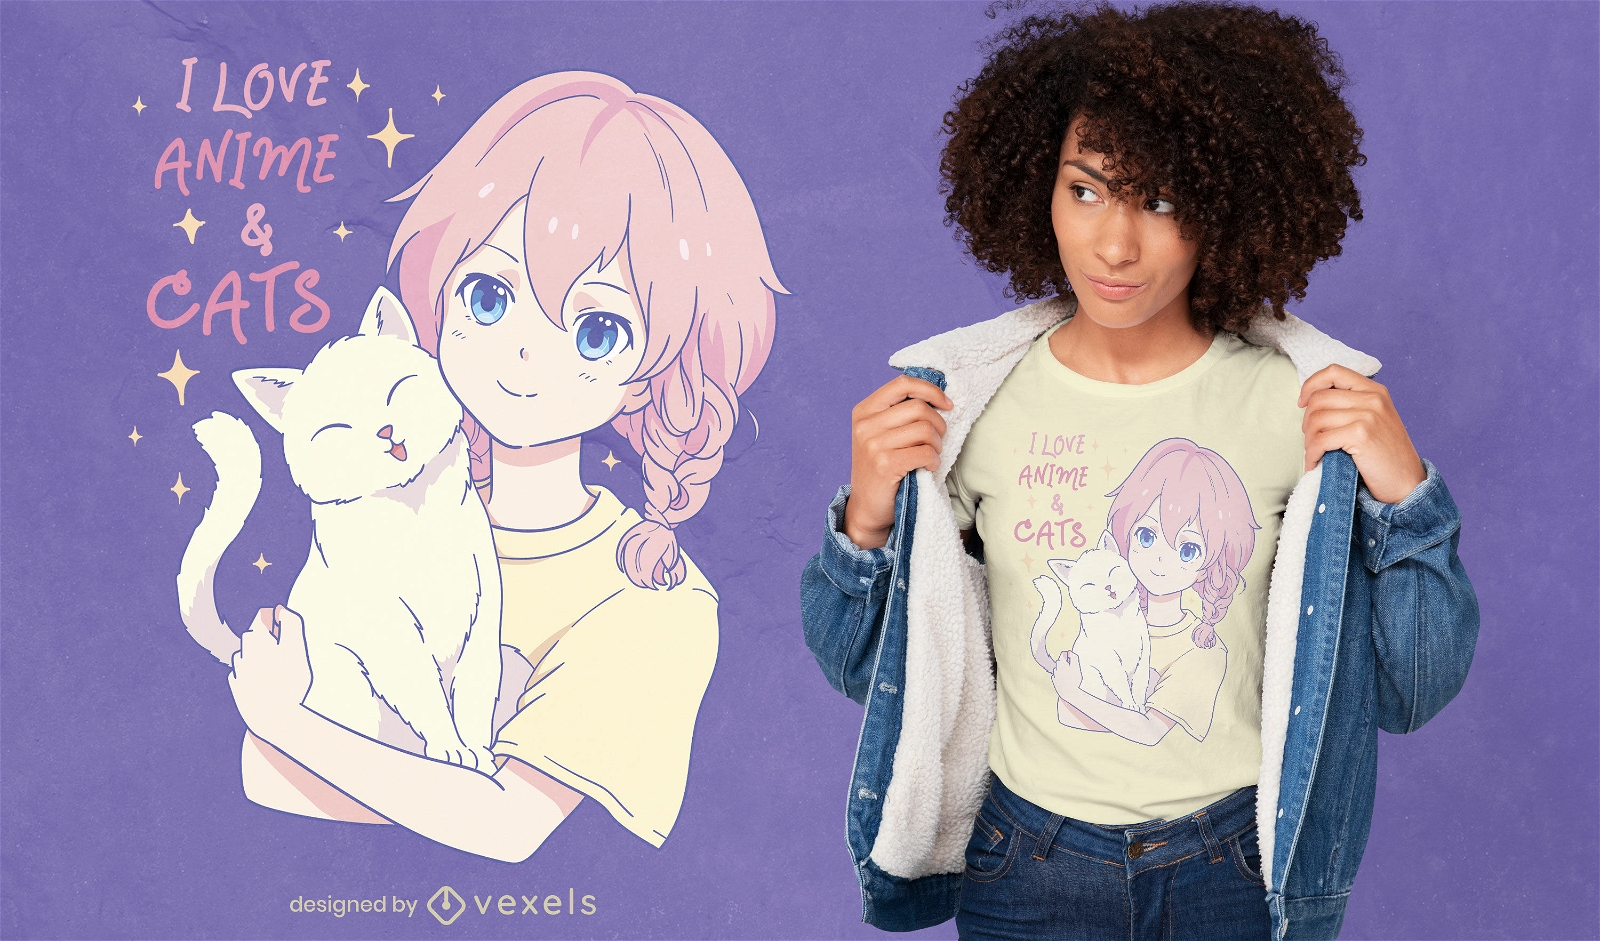 Dise?o de camiseta de chica amante del gato y el anime.